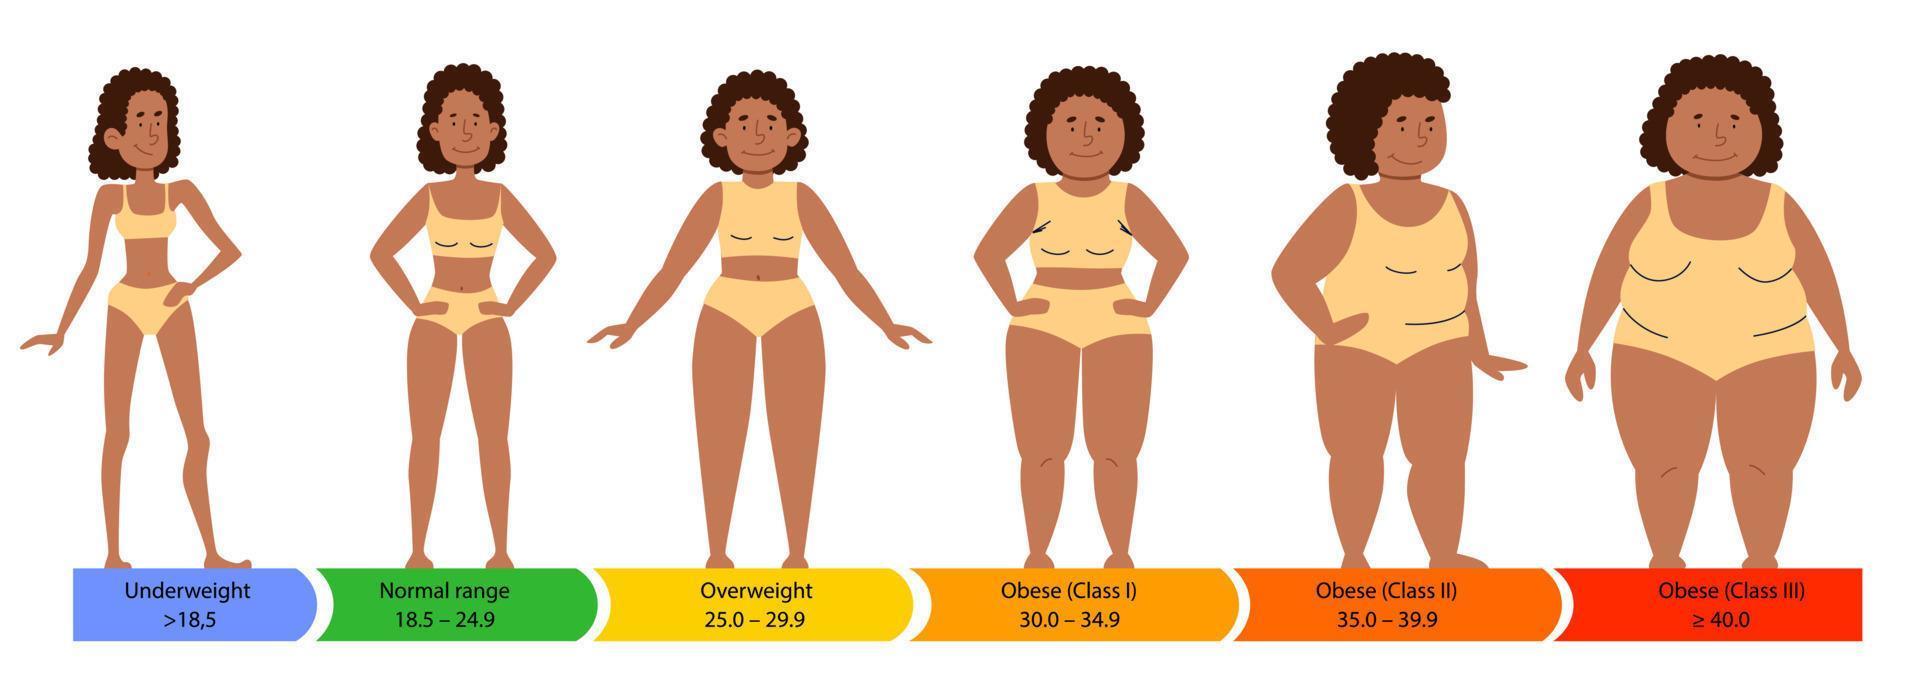 categorías con índice de masa corporal. siluetas femeninas de una mujer afroamericana con una figura gorda, normal y esbelta. vector